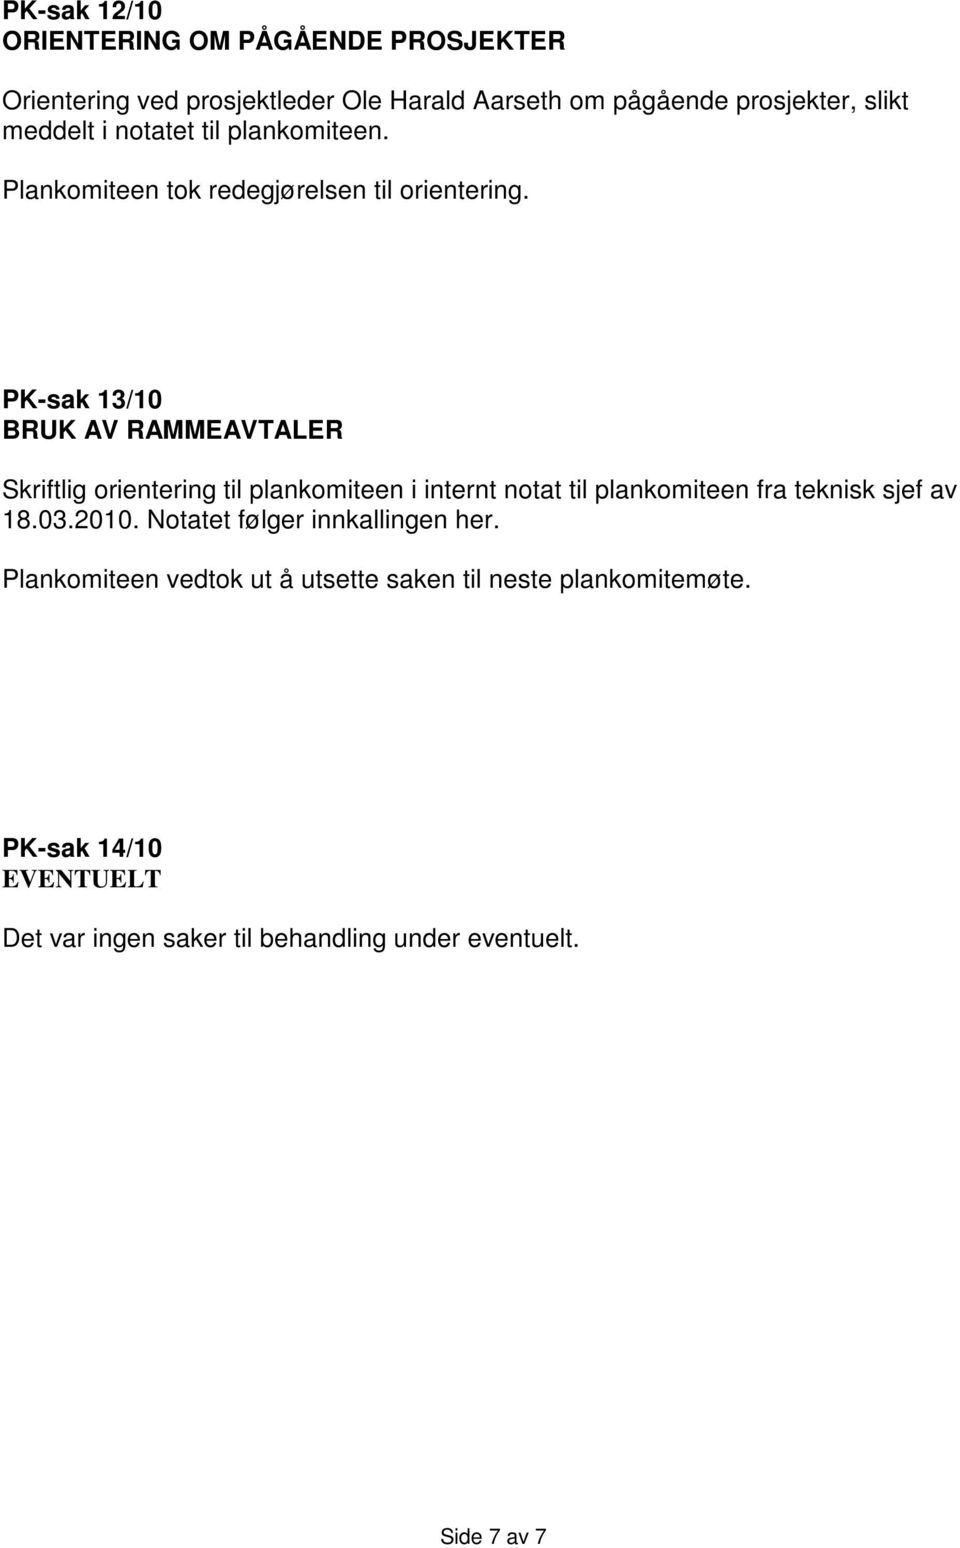 PK-sak 13/10 BRUK AV RAMMEAVTALER Skriftlig orientering til plankomiteen i internt notat til plankomiteen fra teknisk sjef av 18.03.